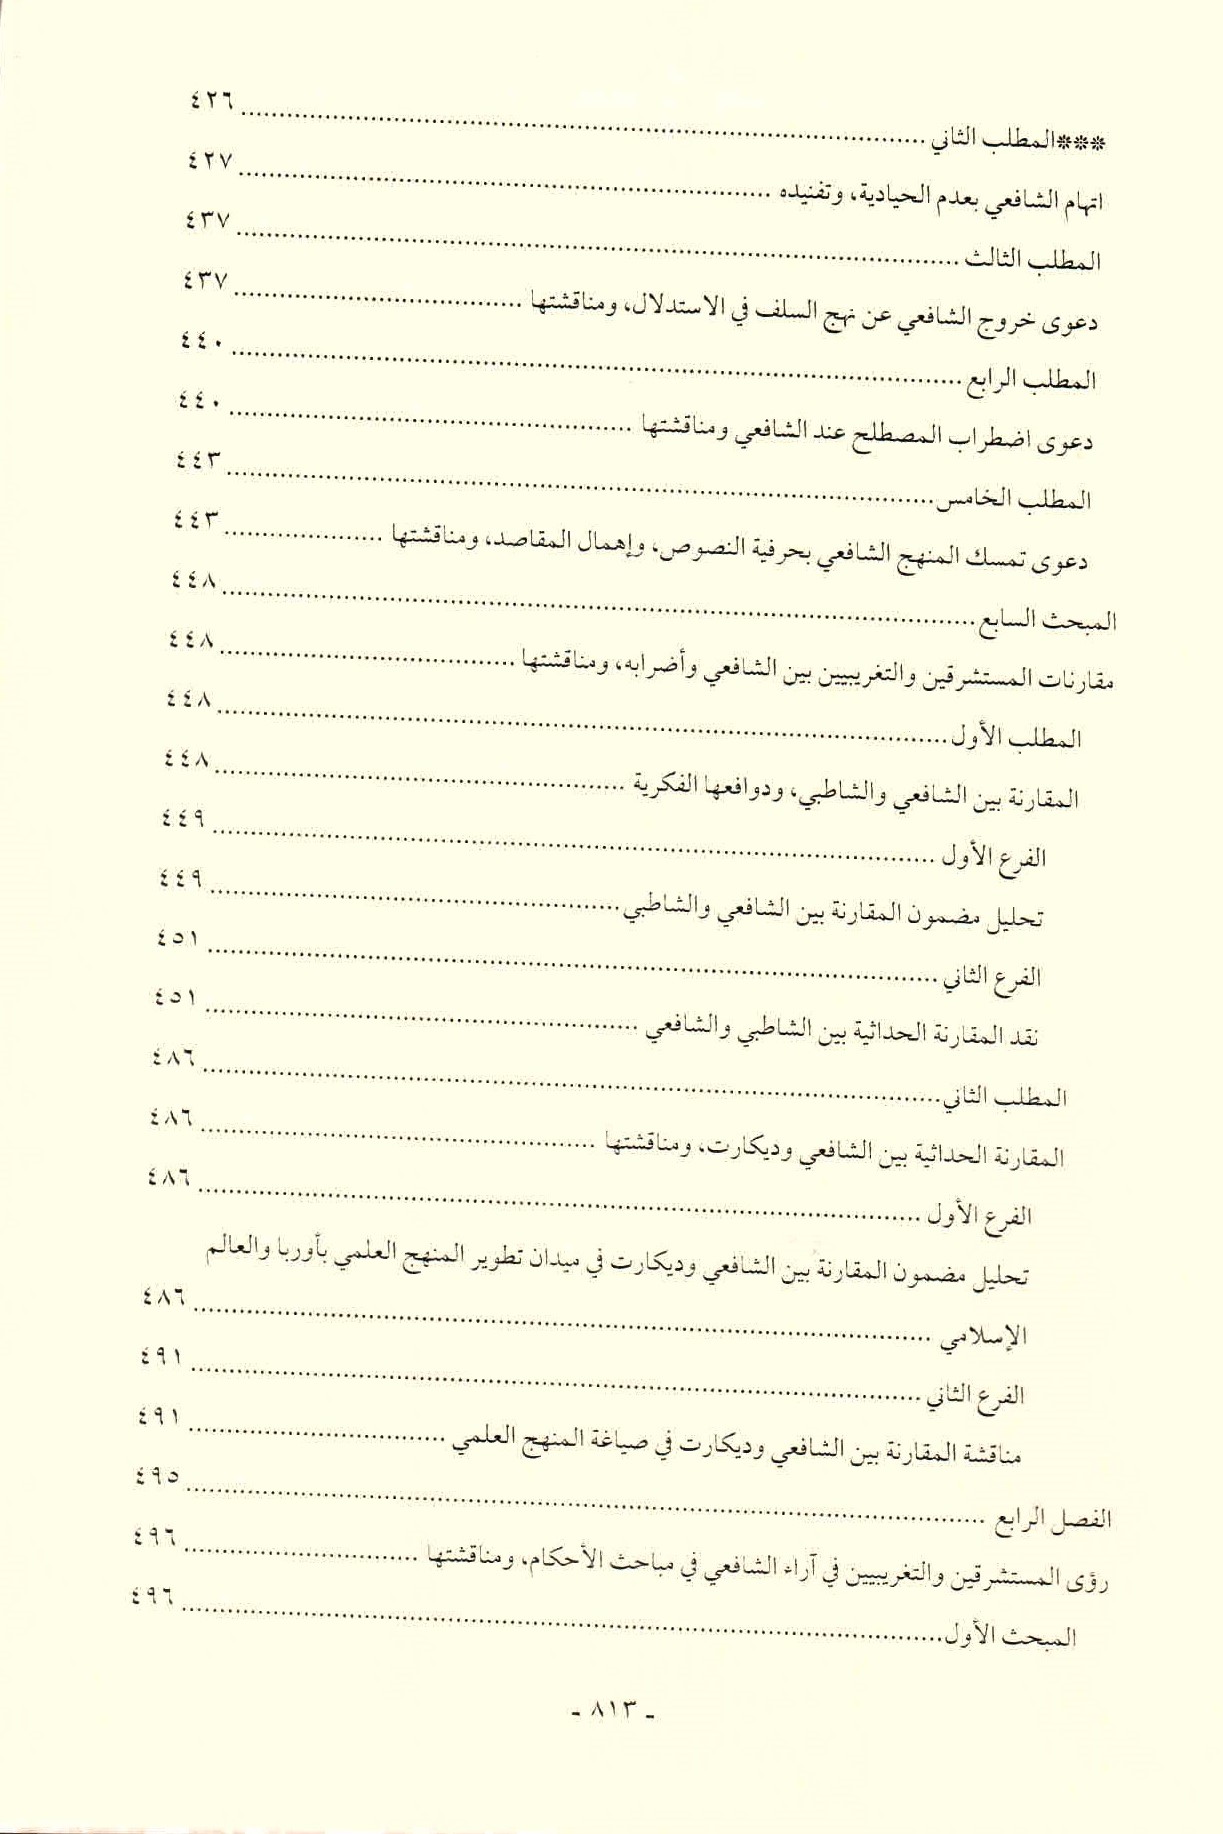 قائمة محتويات كتاب افتراءات المستشرقين والحداثيين على أصول الشريعة وأئمتها للدكتور هاني محمود ص. 813